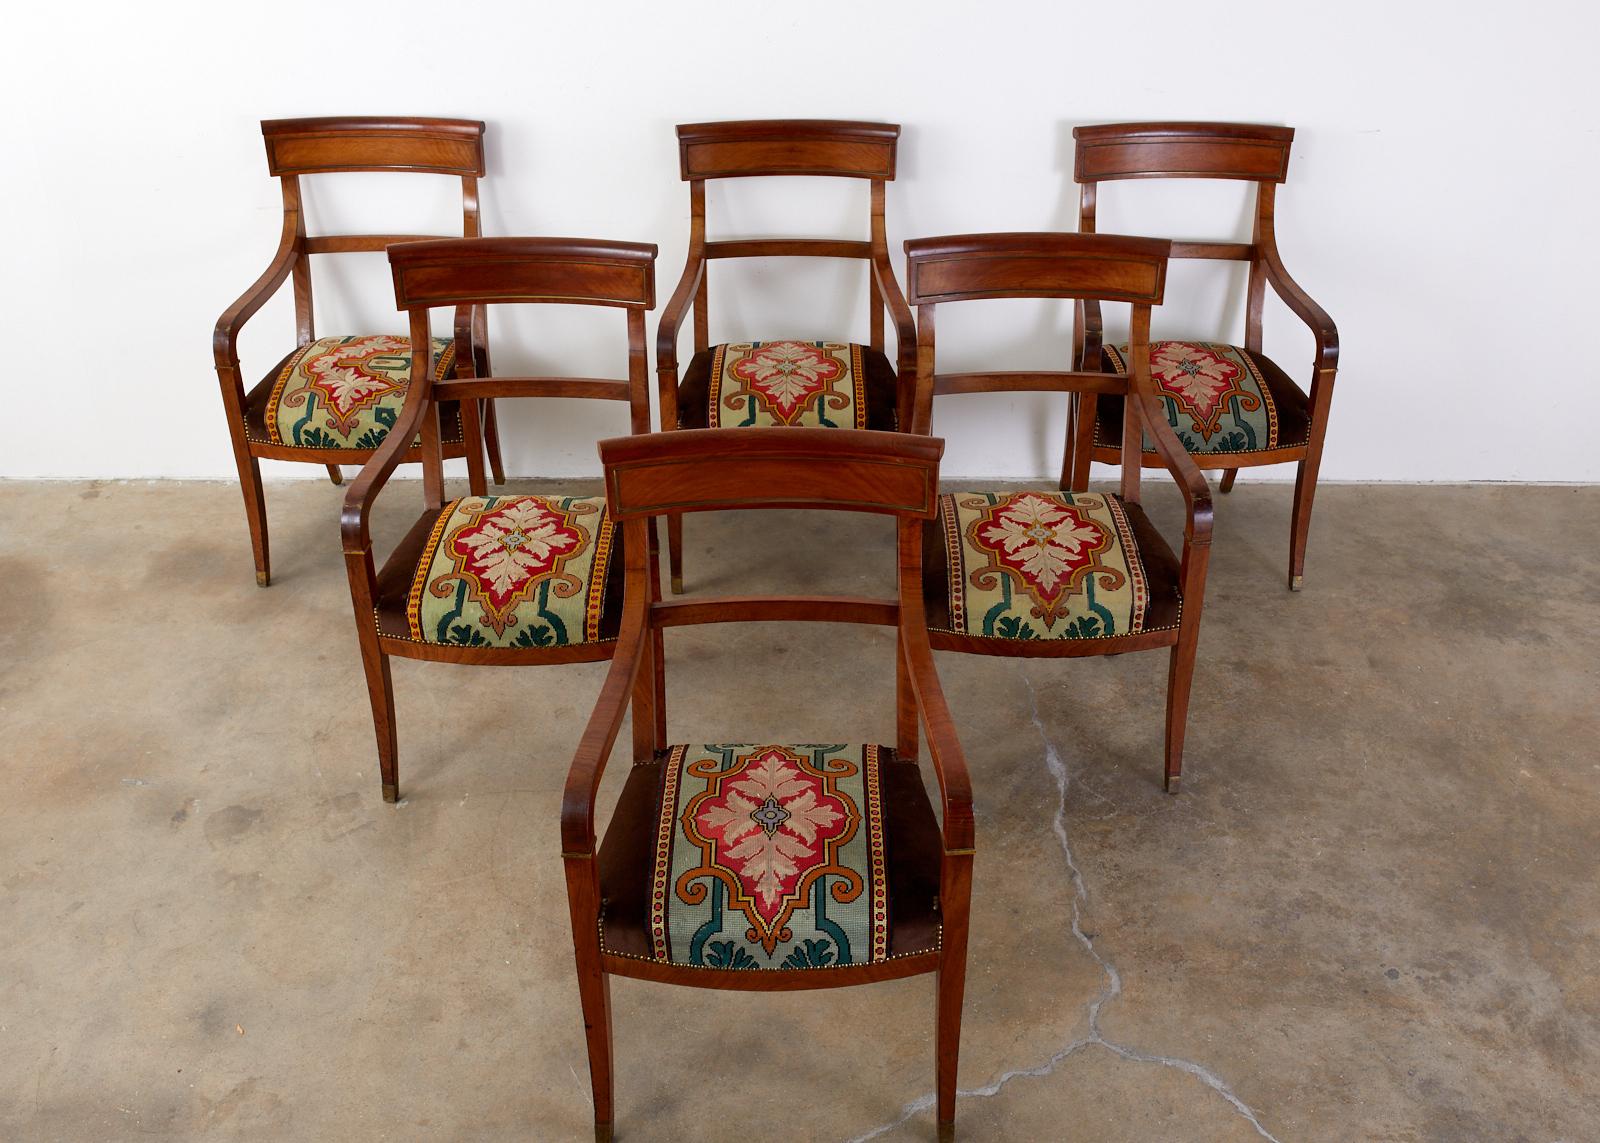 Ensemble de six fauteuils de salle à manger ou de bibliothèque en noyer, montés sur bronze, de style Régence anglaise, du XIXe siècle. Les chaises présentent une assise décorée de points d'aiguille de l'époque Arts & Crafts, avec des bordures en